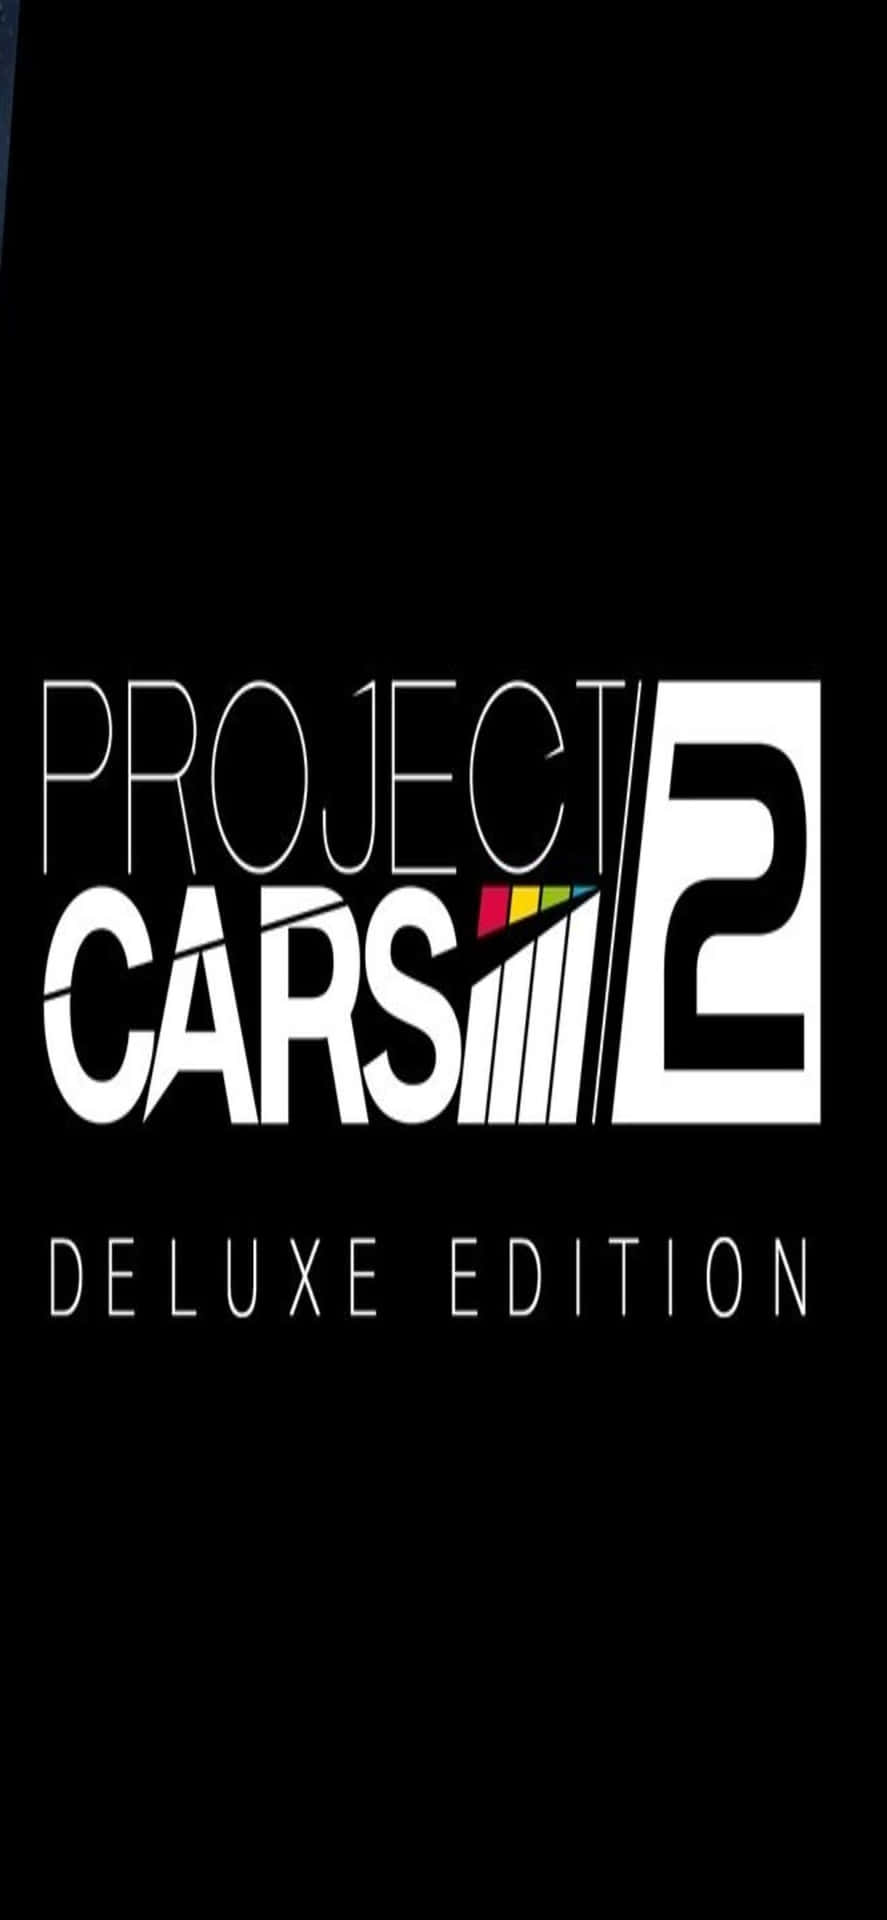 Logotipode Project Cars 2 - Edición Deluxe